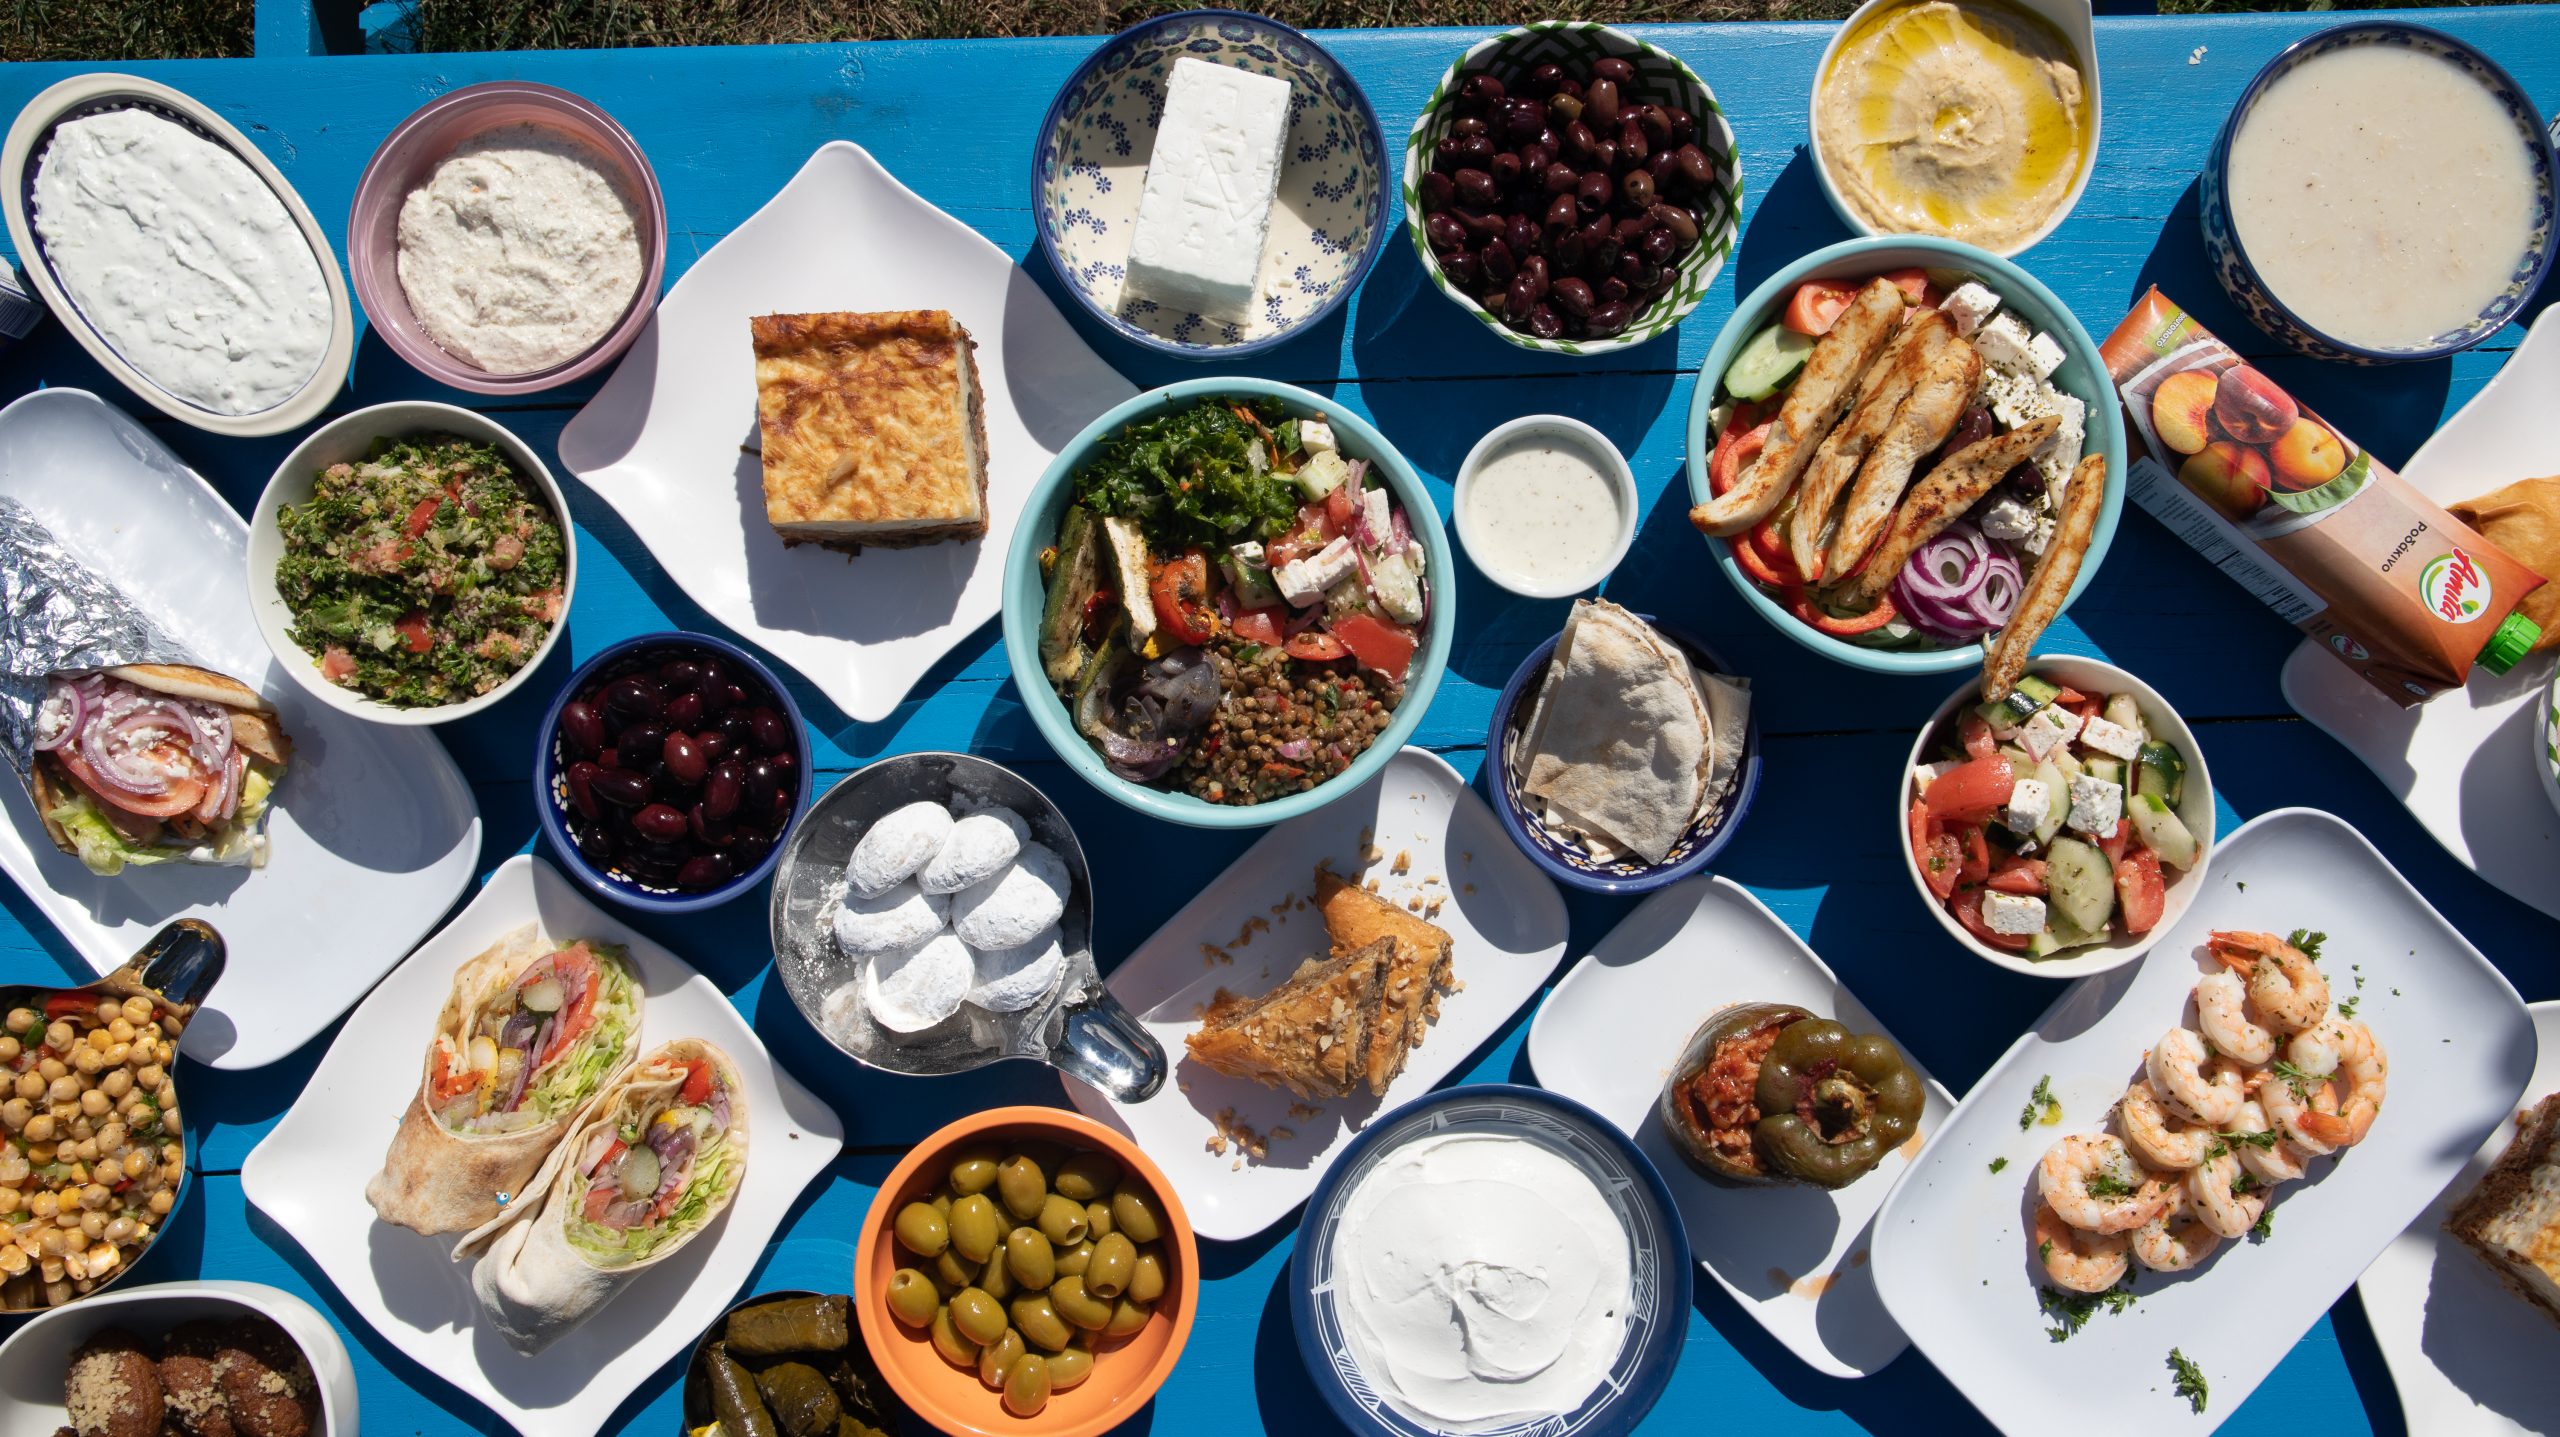 Display of various Greek foods on table